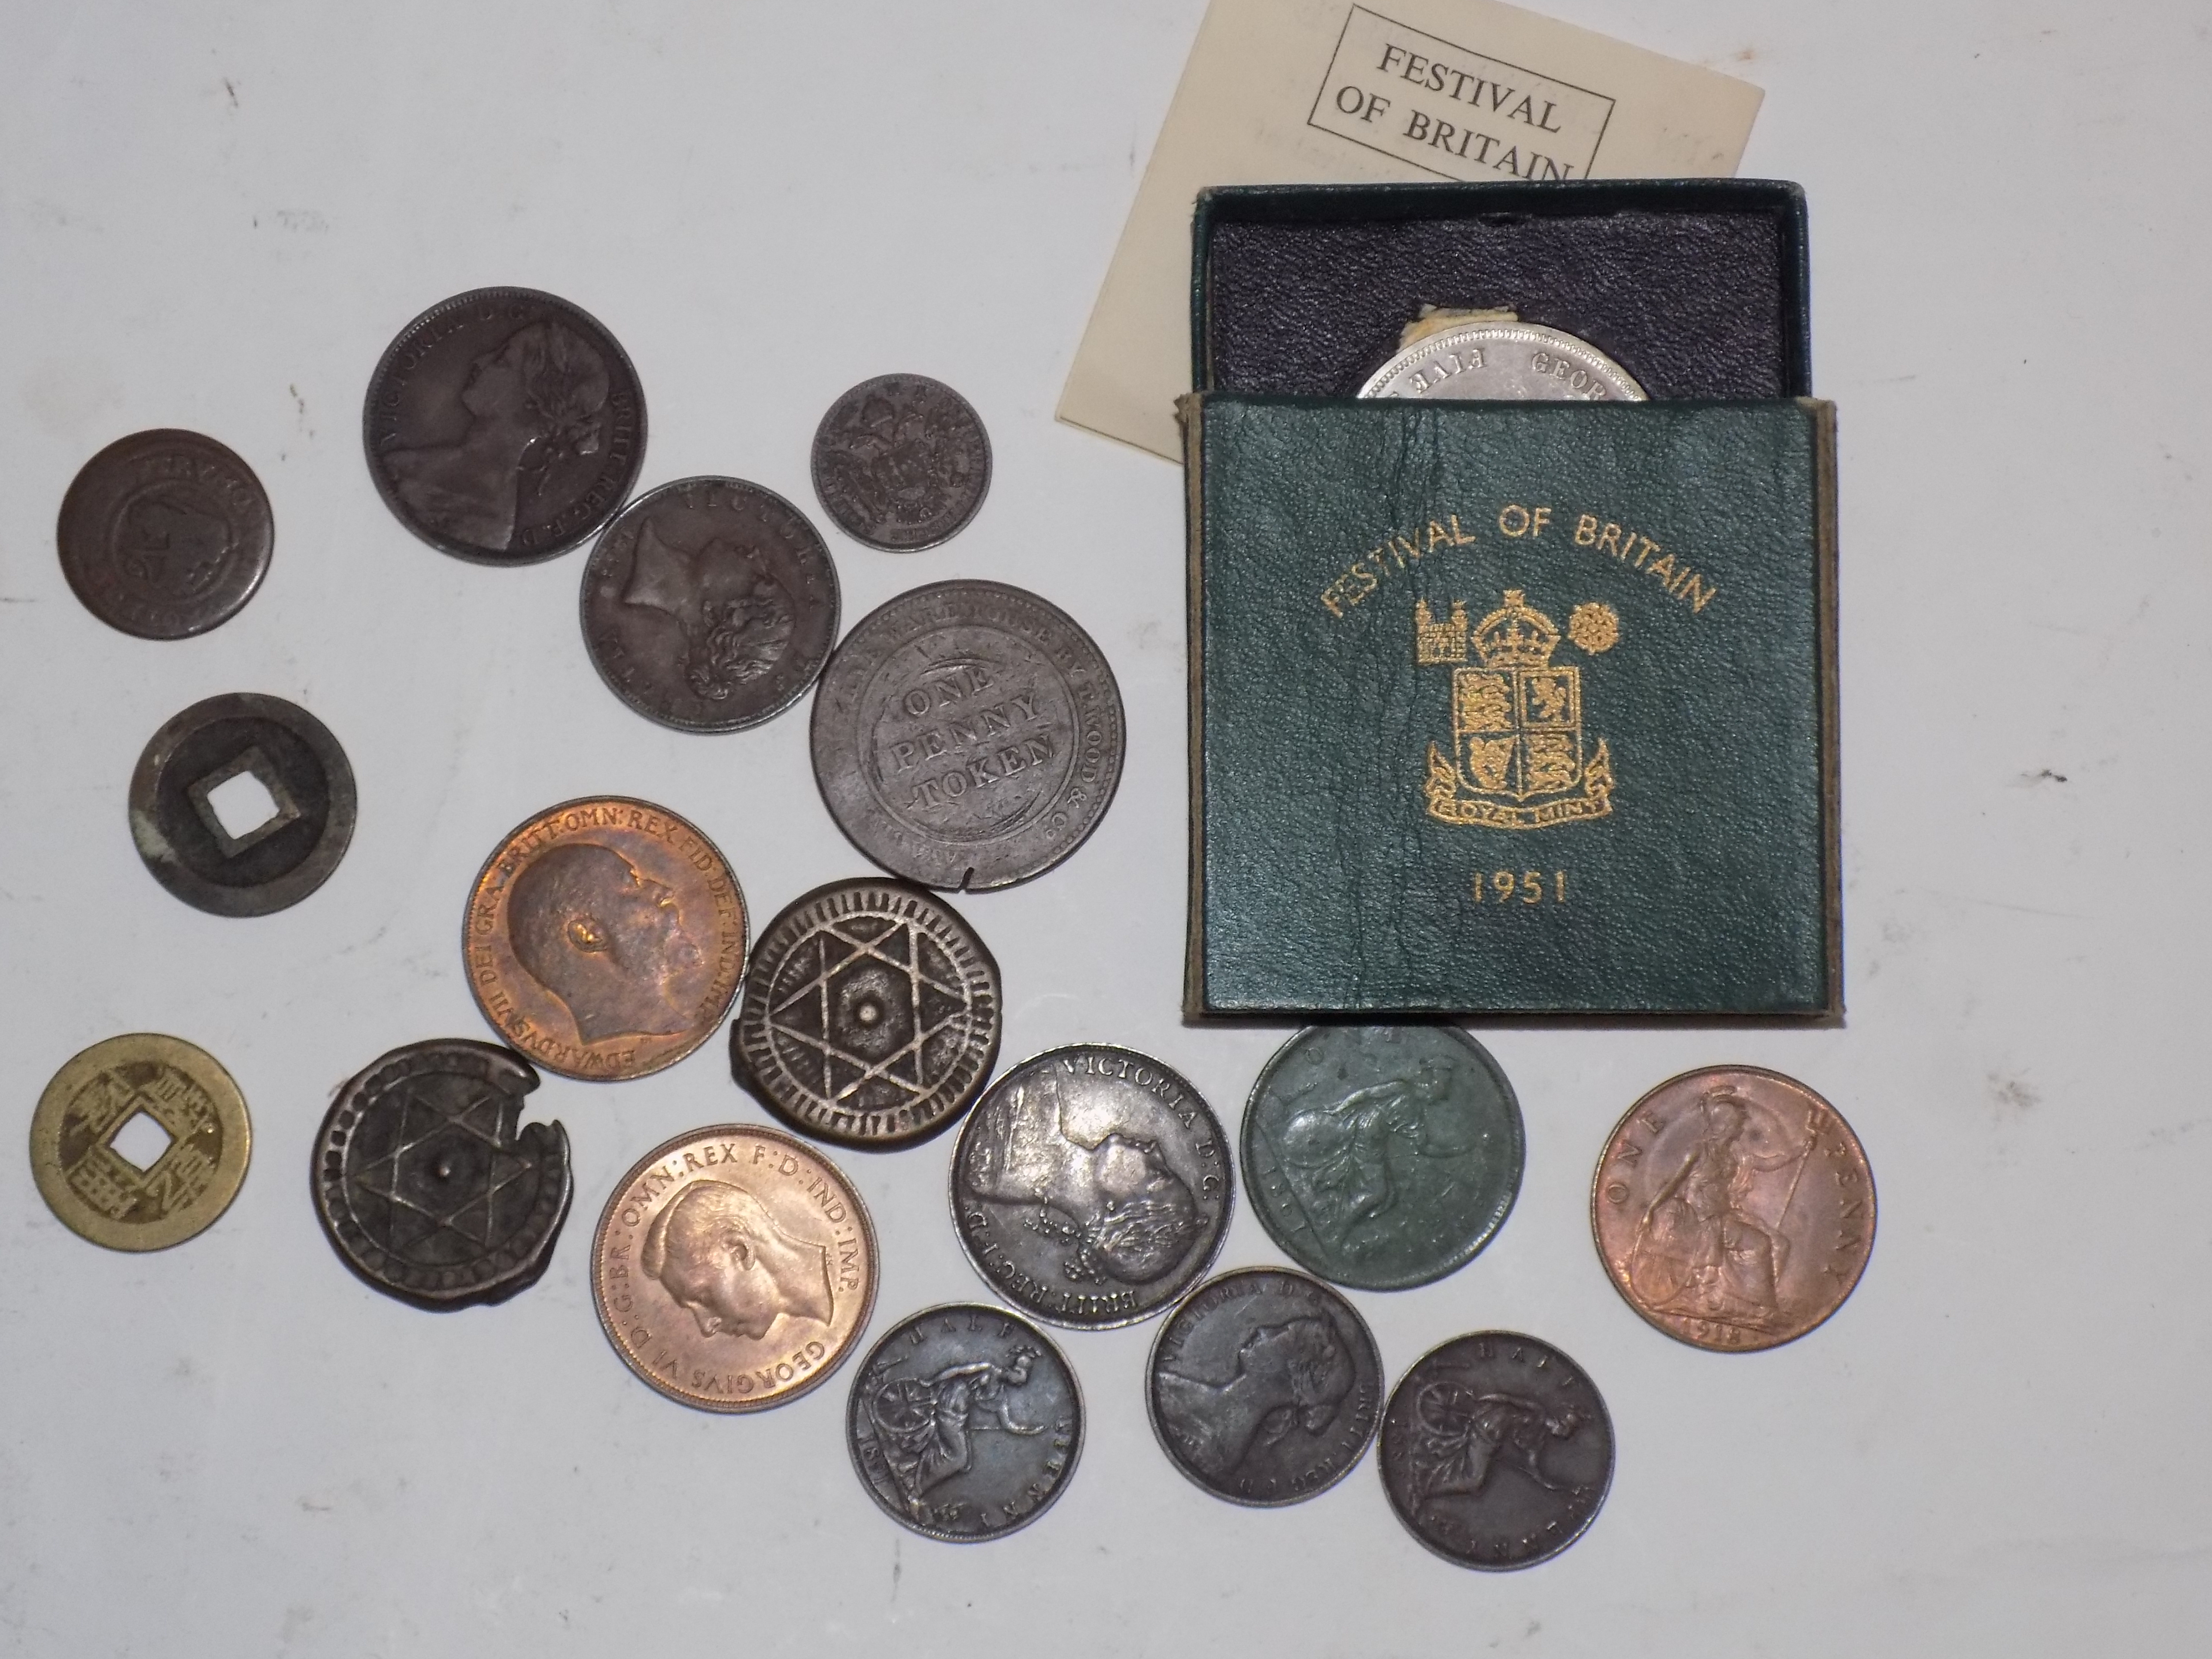 Miscellaneous copper coins etc.